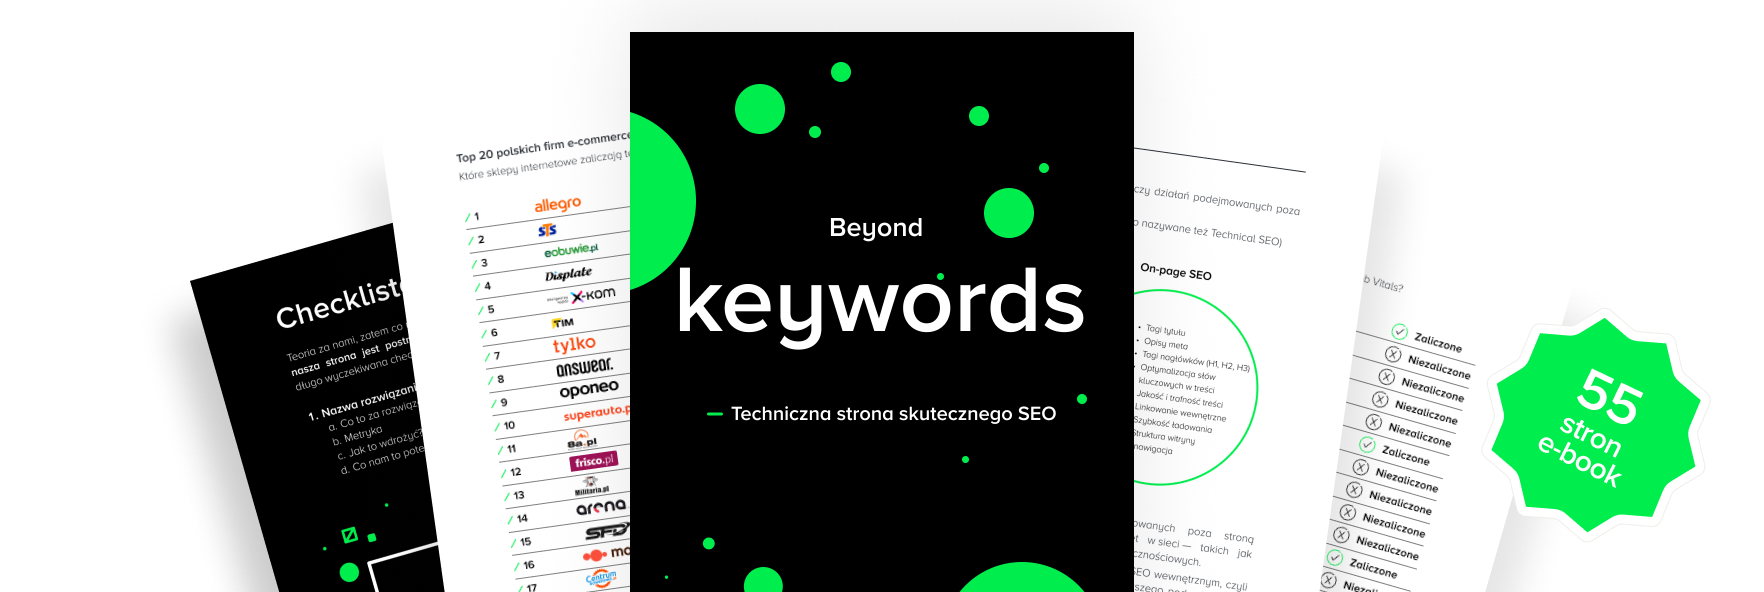 E-book Beyond Keywords: Techniczne SEO - Techniczna Strona Skutecznego SEO: okładka i jego zawartość